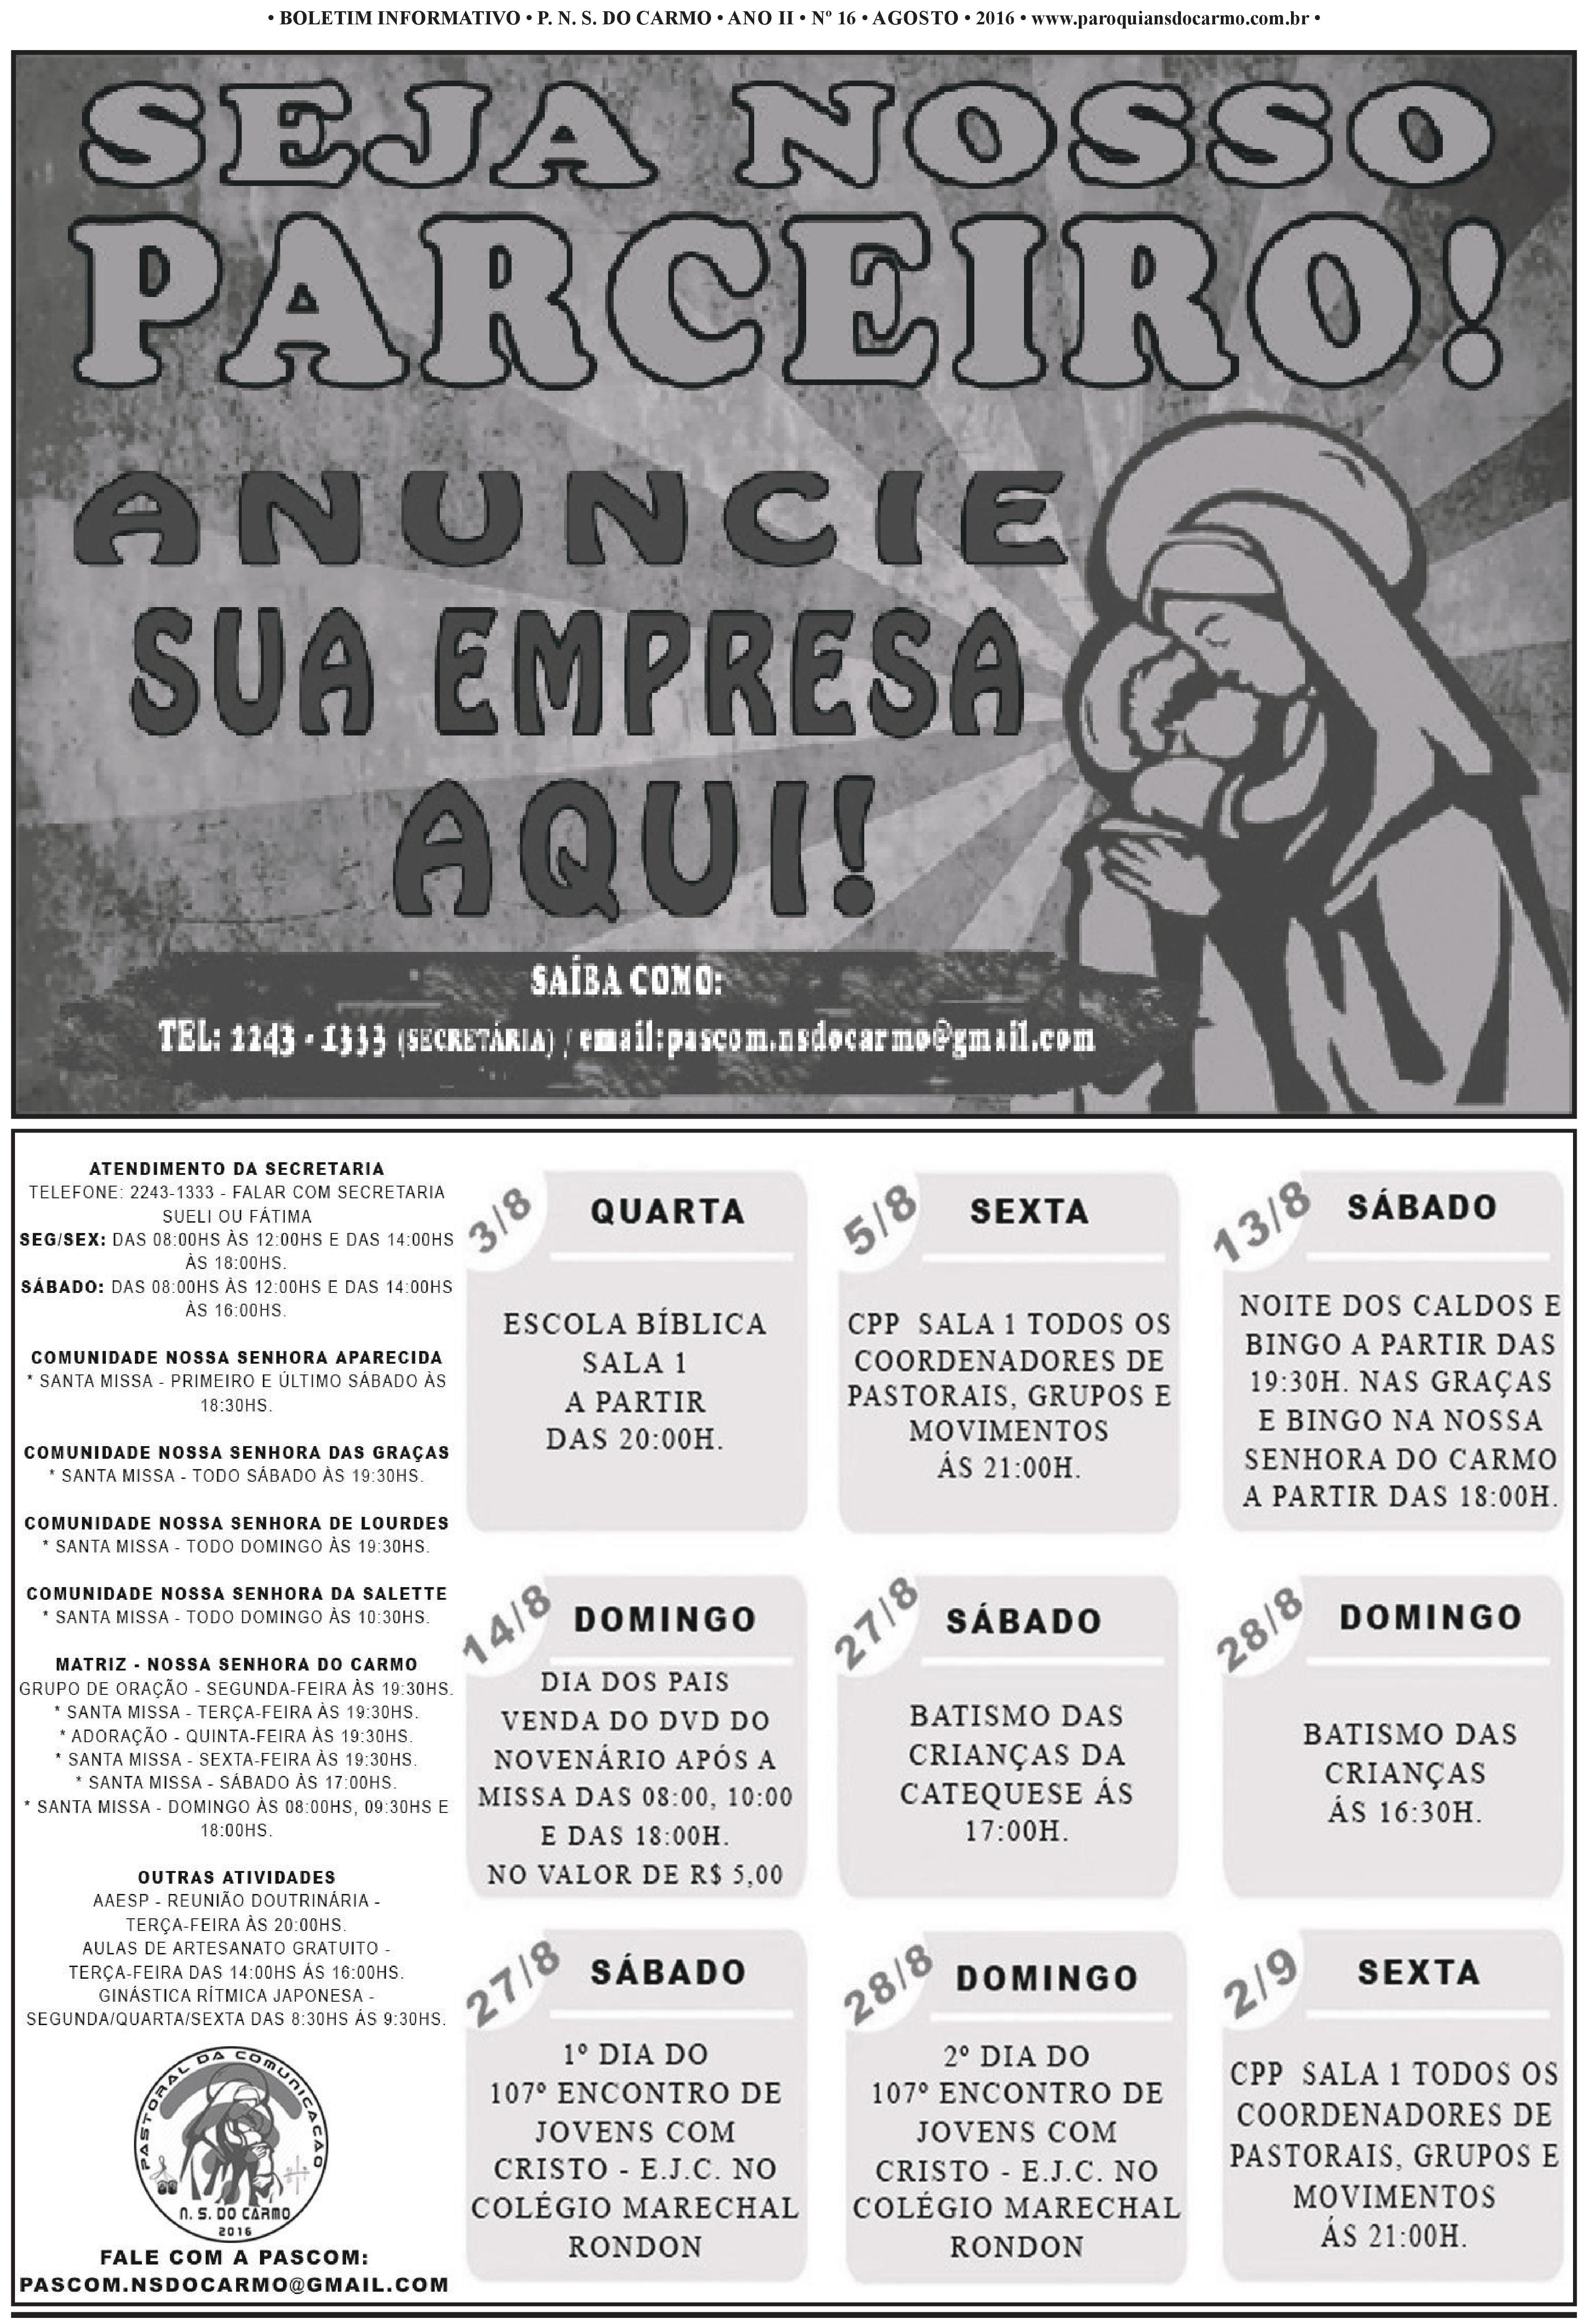 Info Carmo - Jornal da Paróquia Nossa Senhora do Carmo - Vila Paulistana